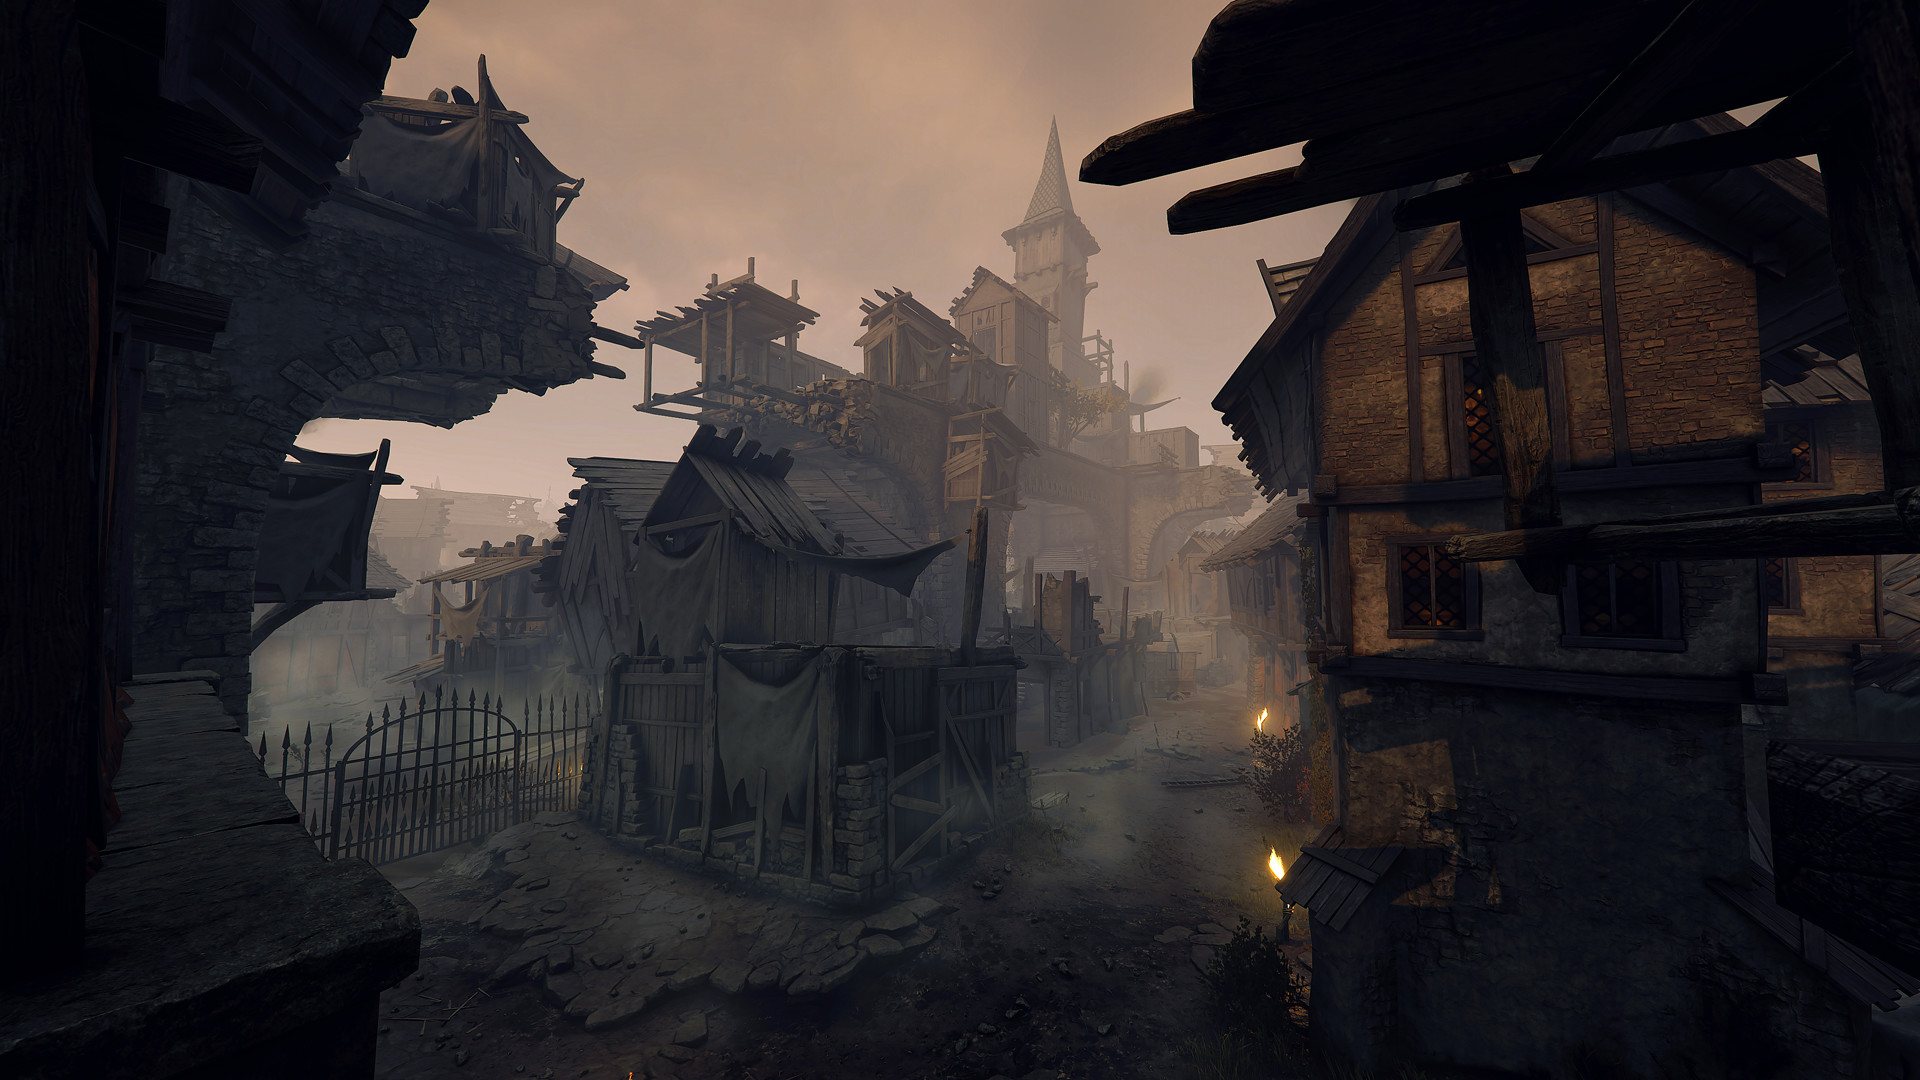 Warhammer: Vermintide 2 - Shadows Over Bögenhafen DLC Steam Altergift